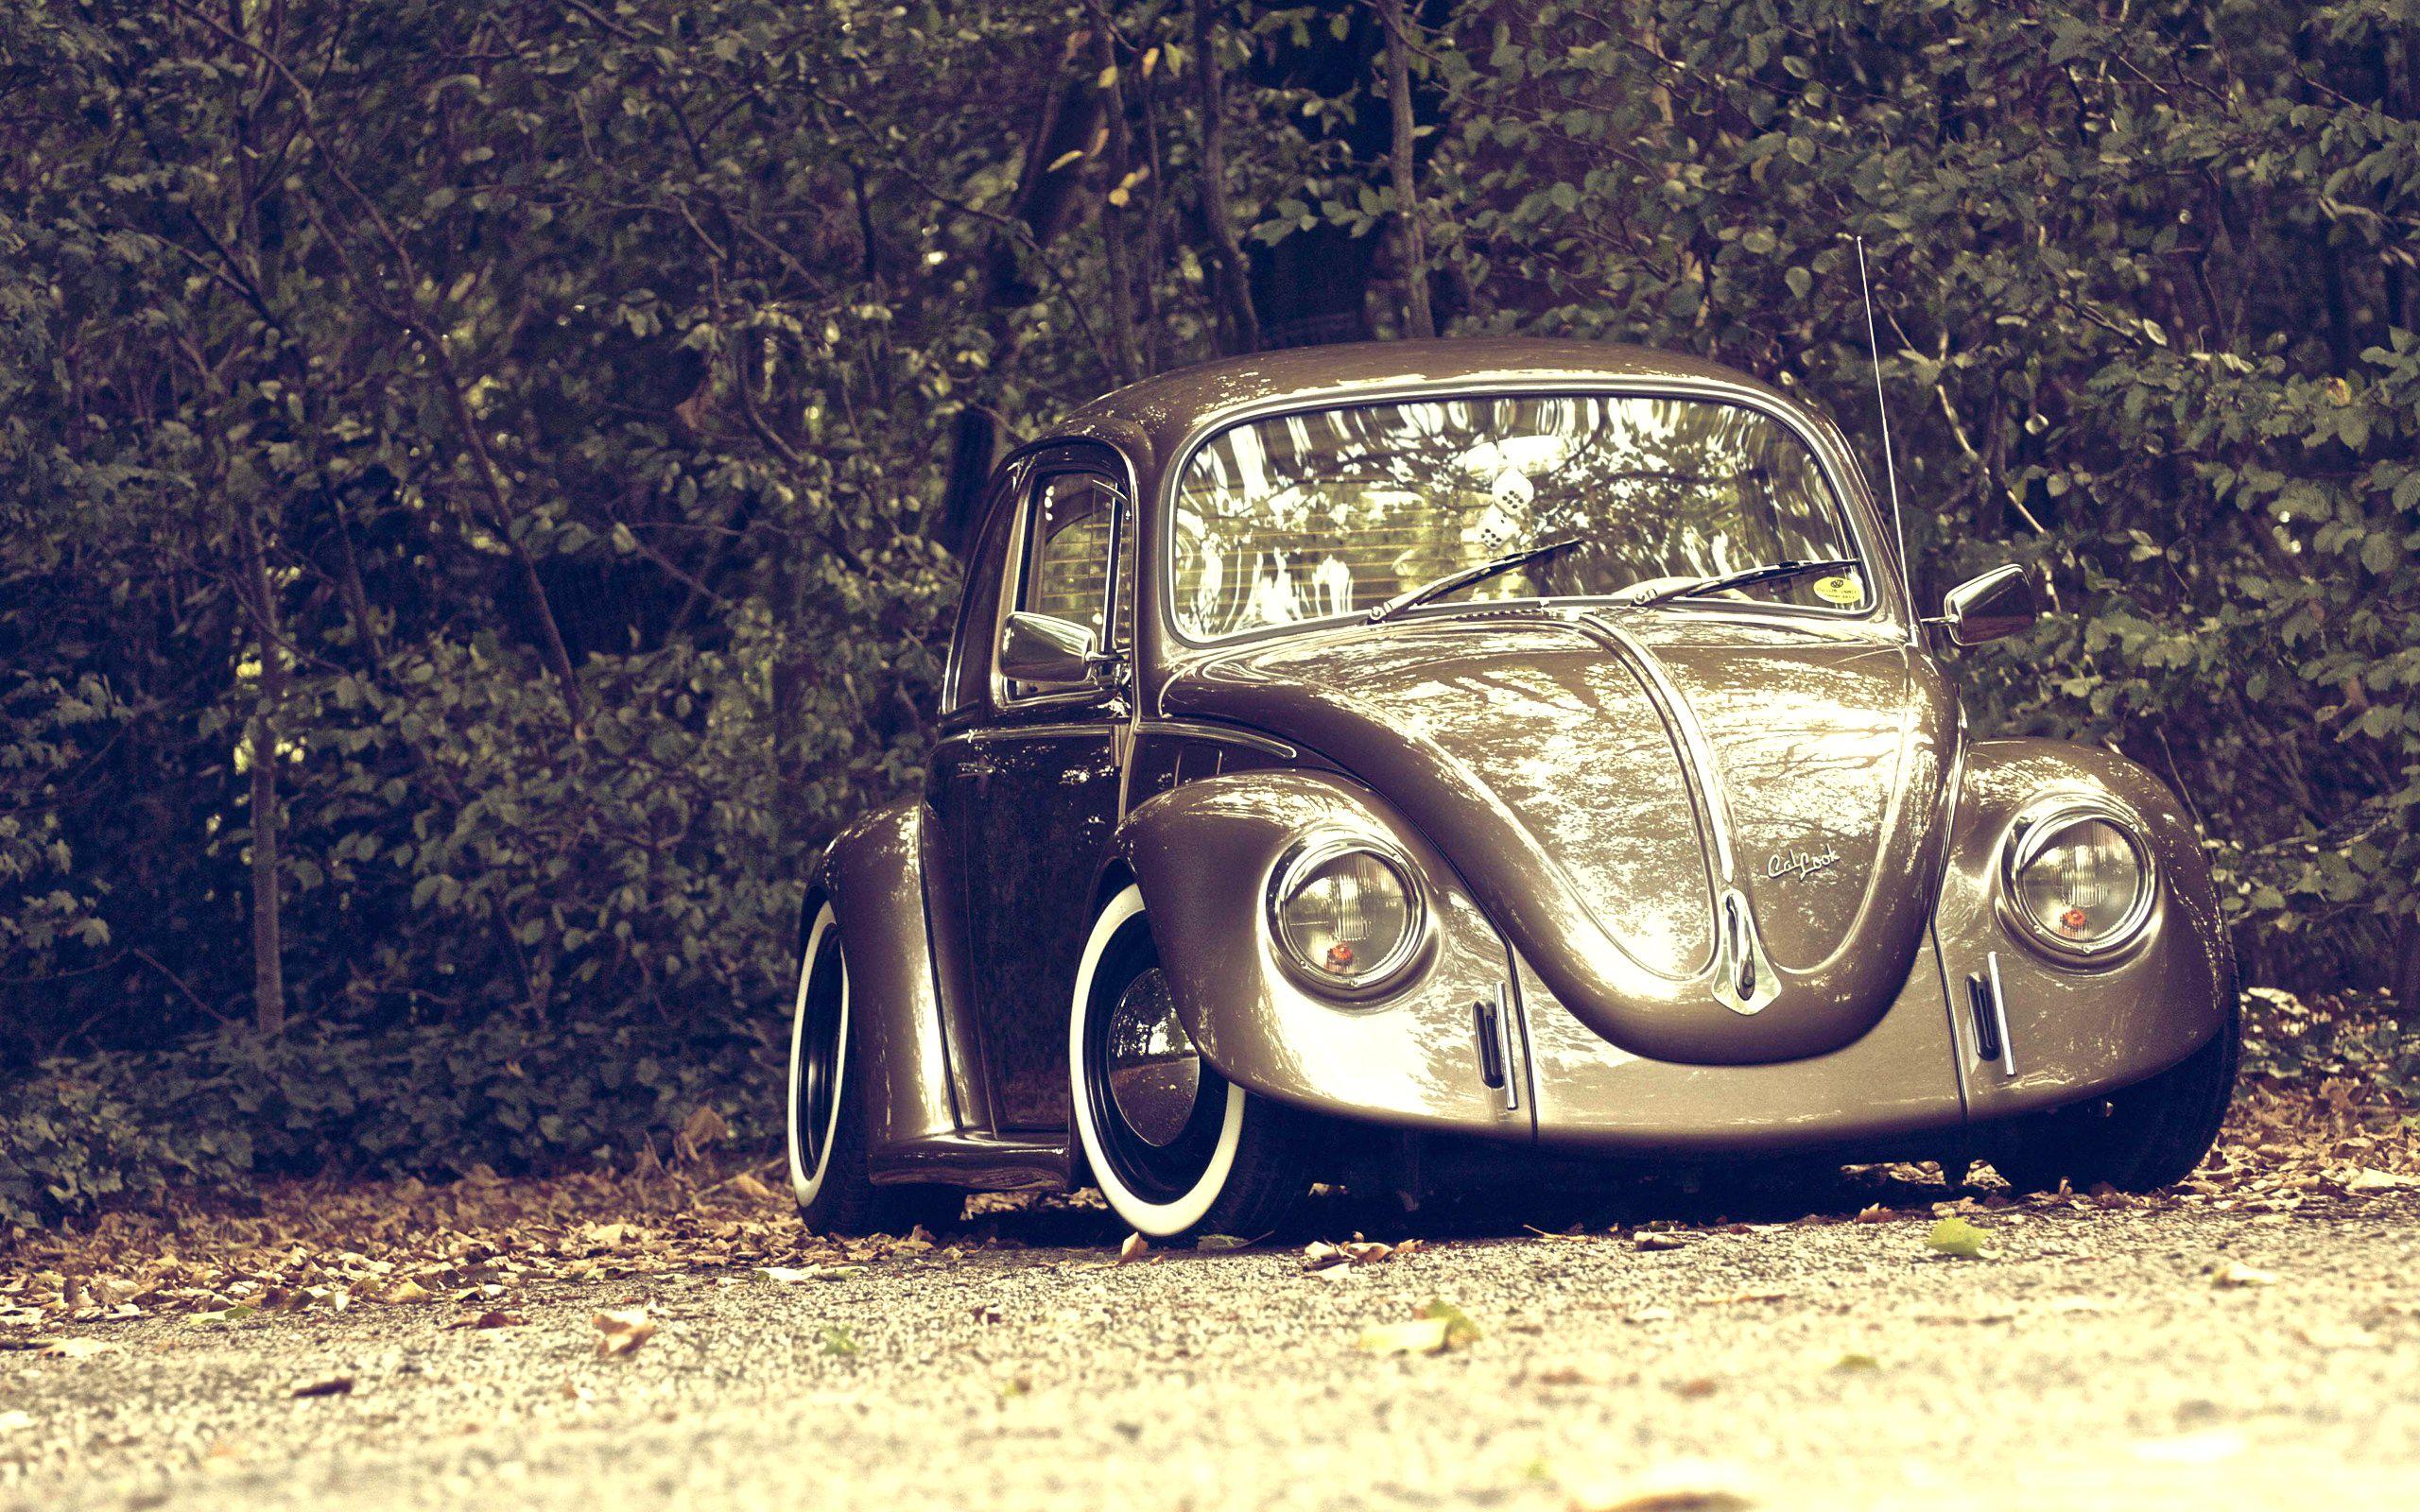 Volkswagen Car Beetle Wallpaper. Cars. Autos